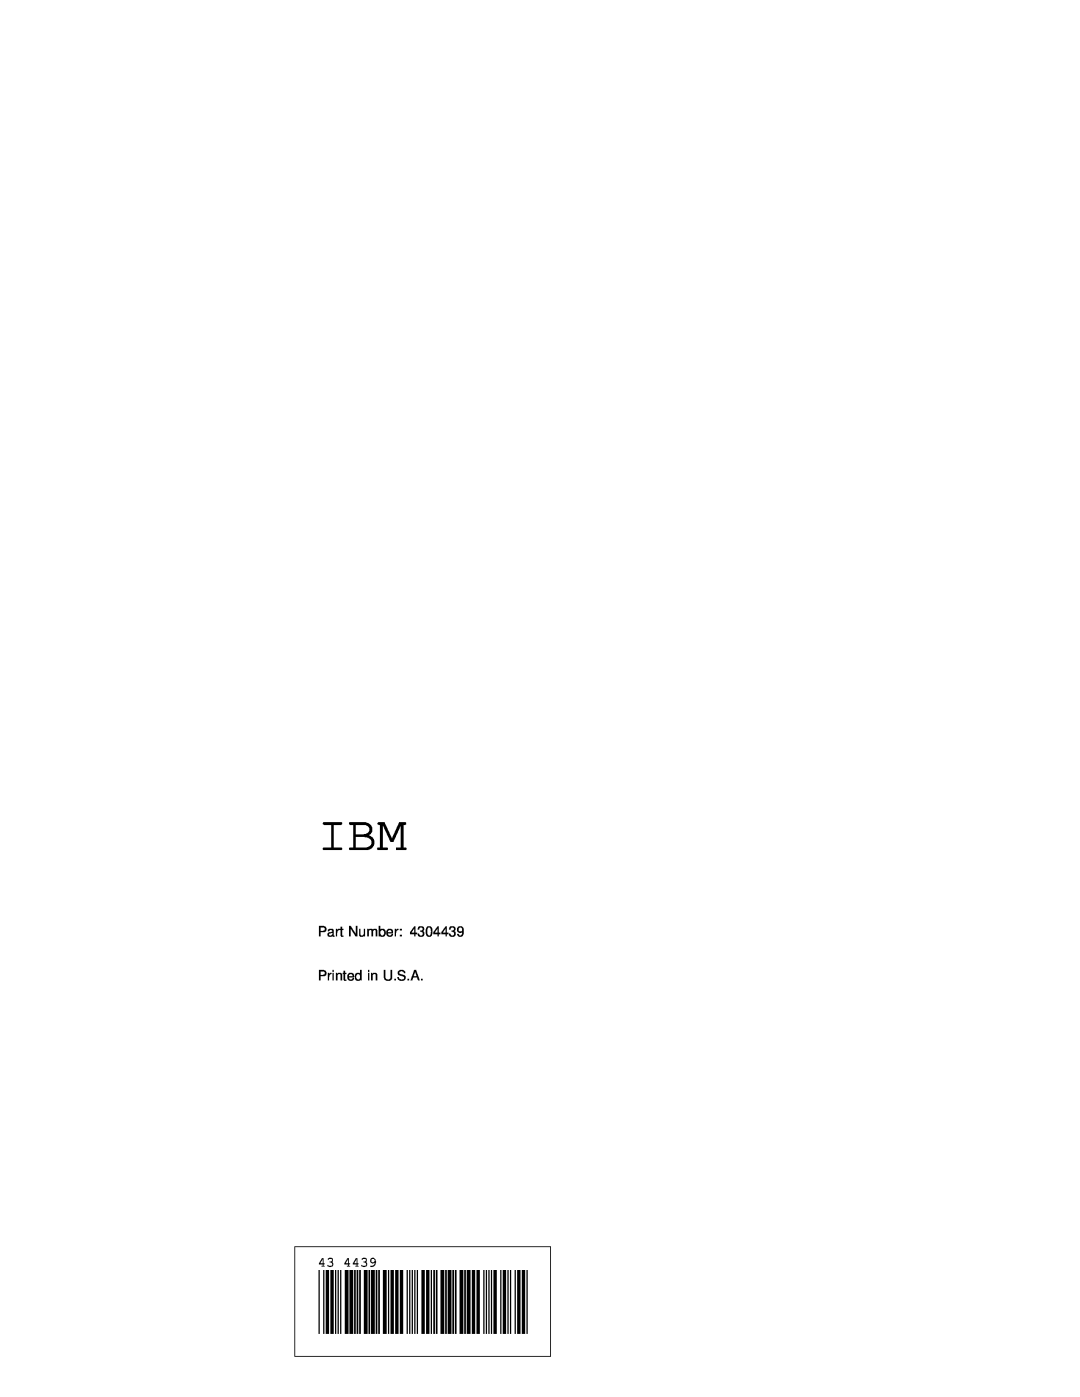 IBM ATA-3 manual Part Number Printed in U.S.A 